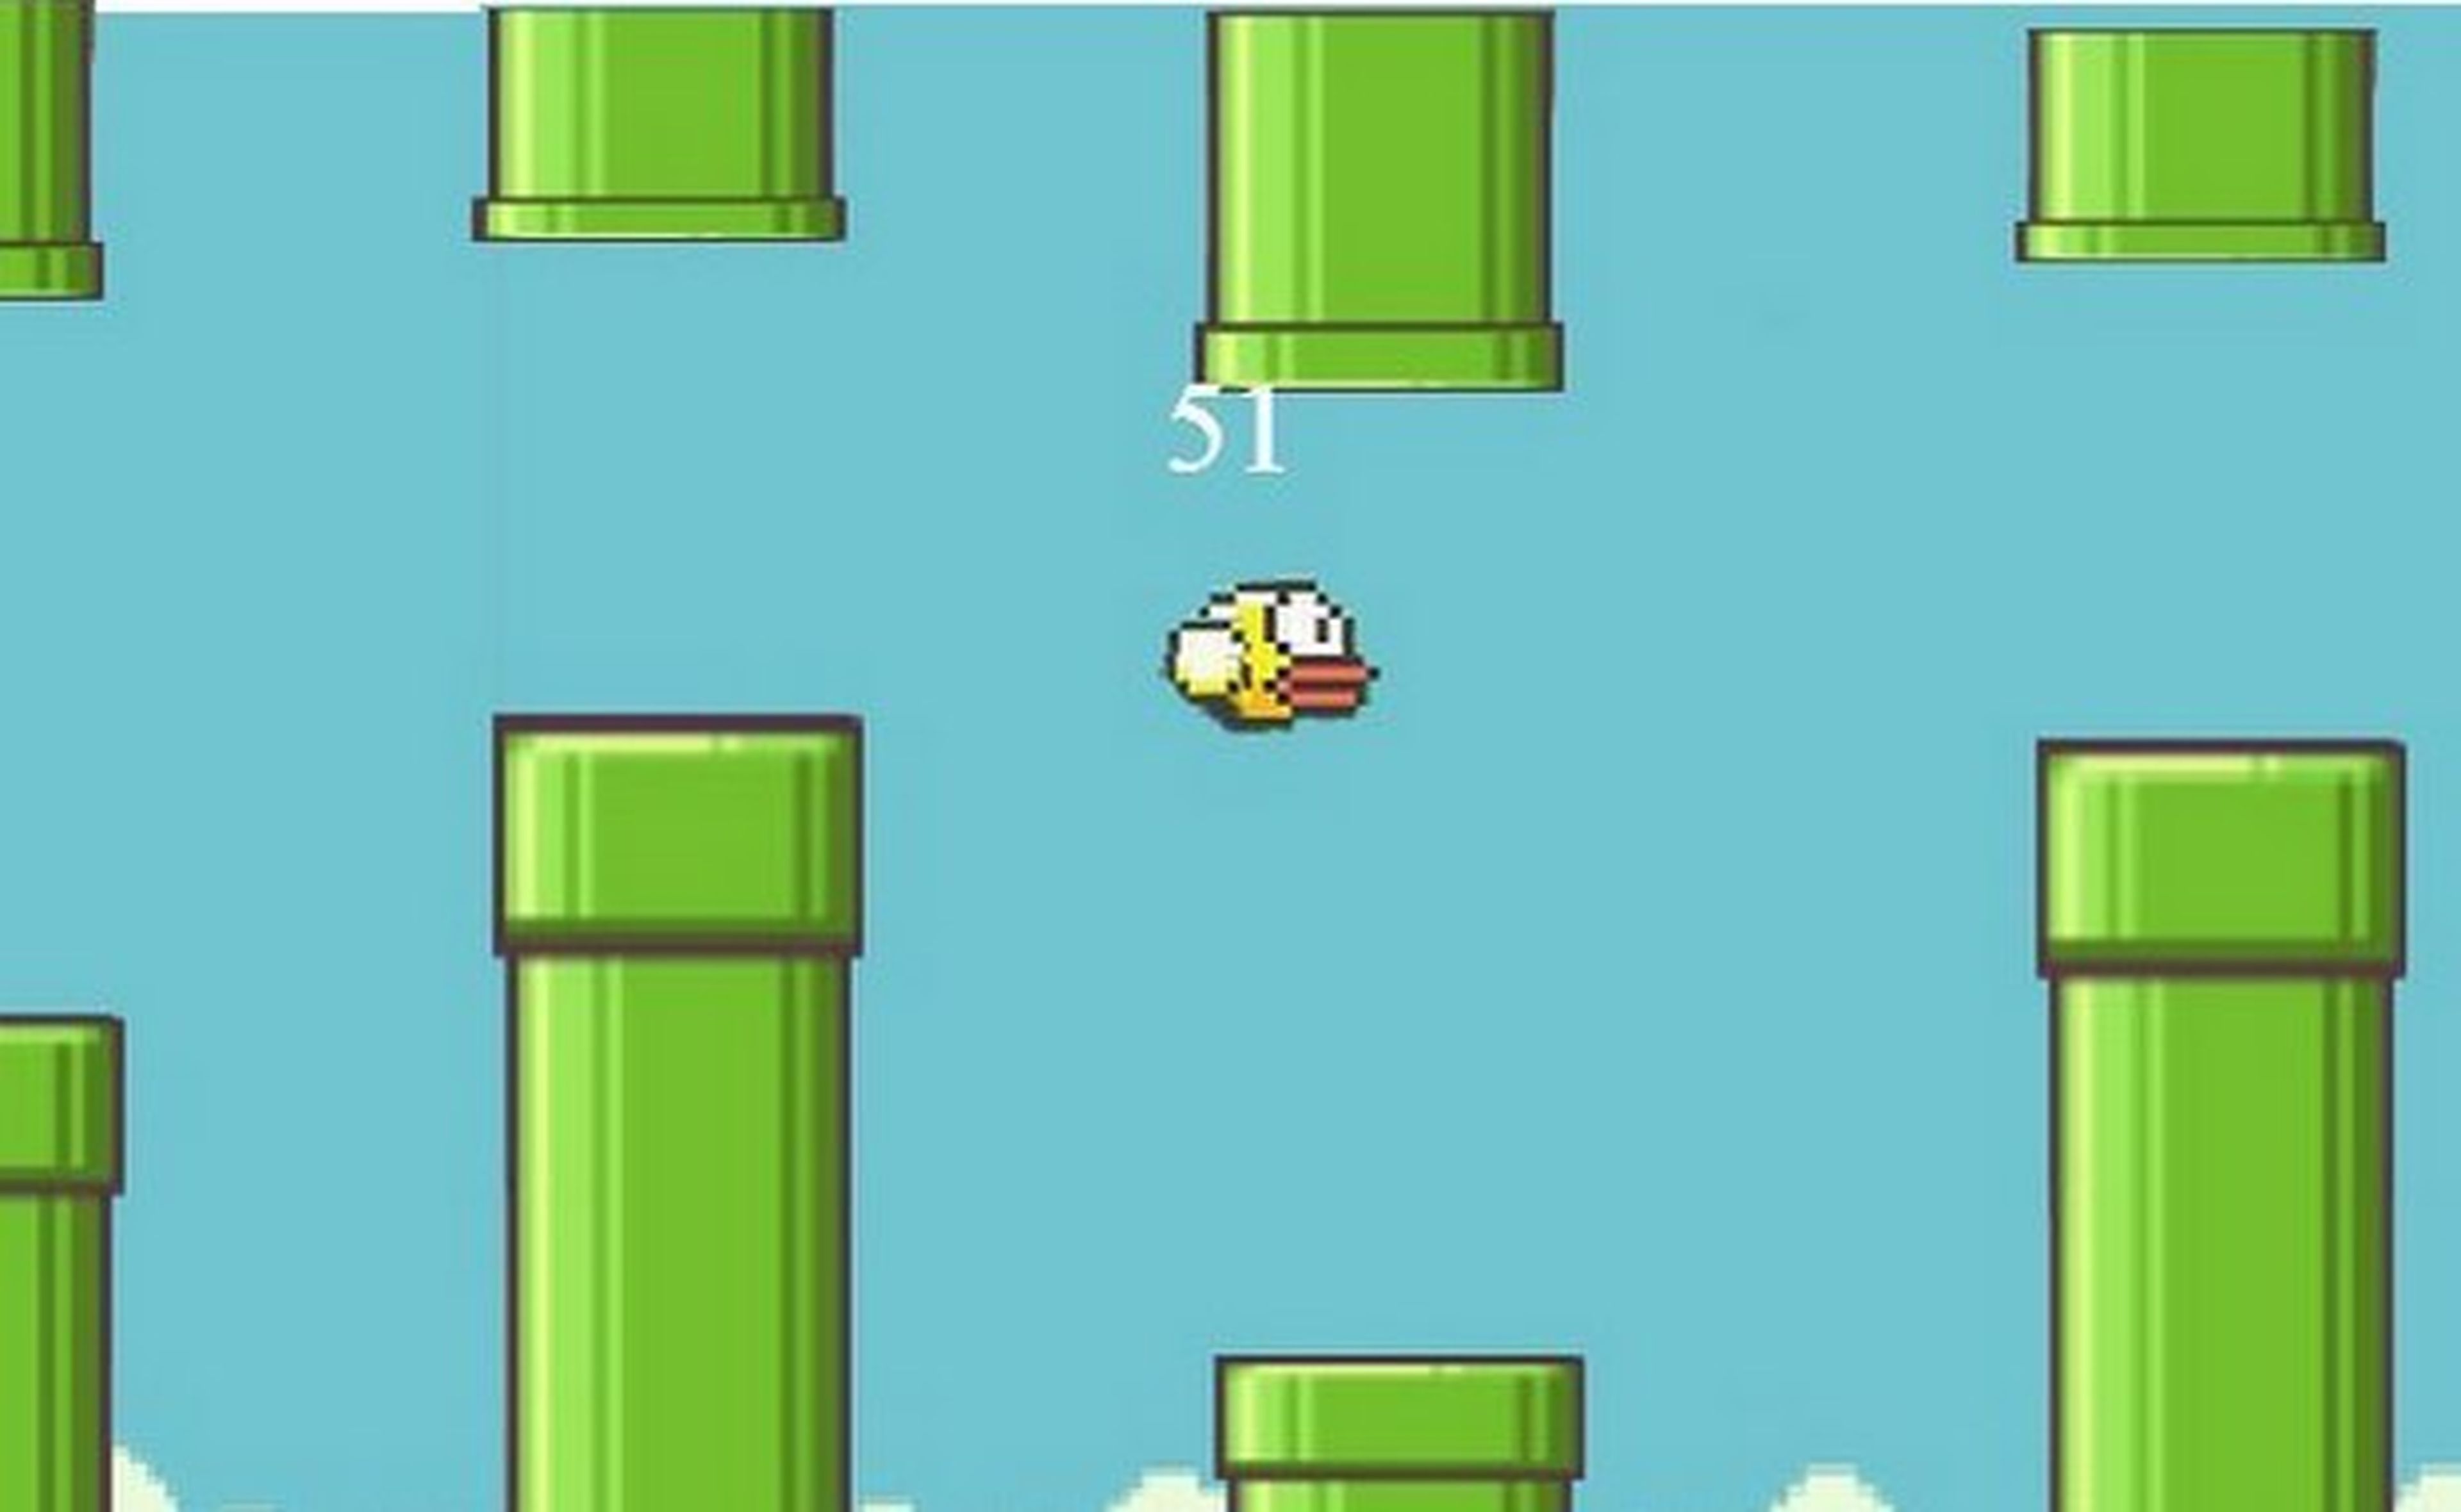 Nuevo juego del creador de Flappy Bird